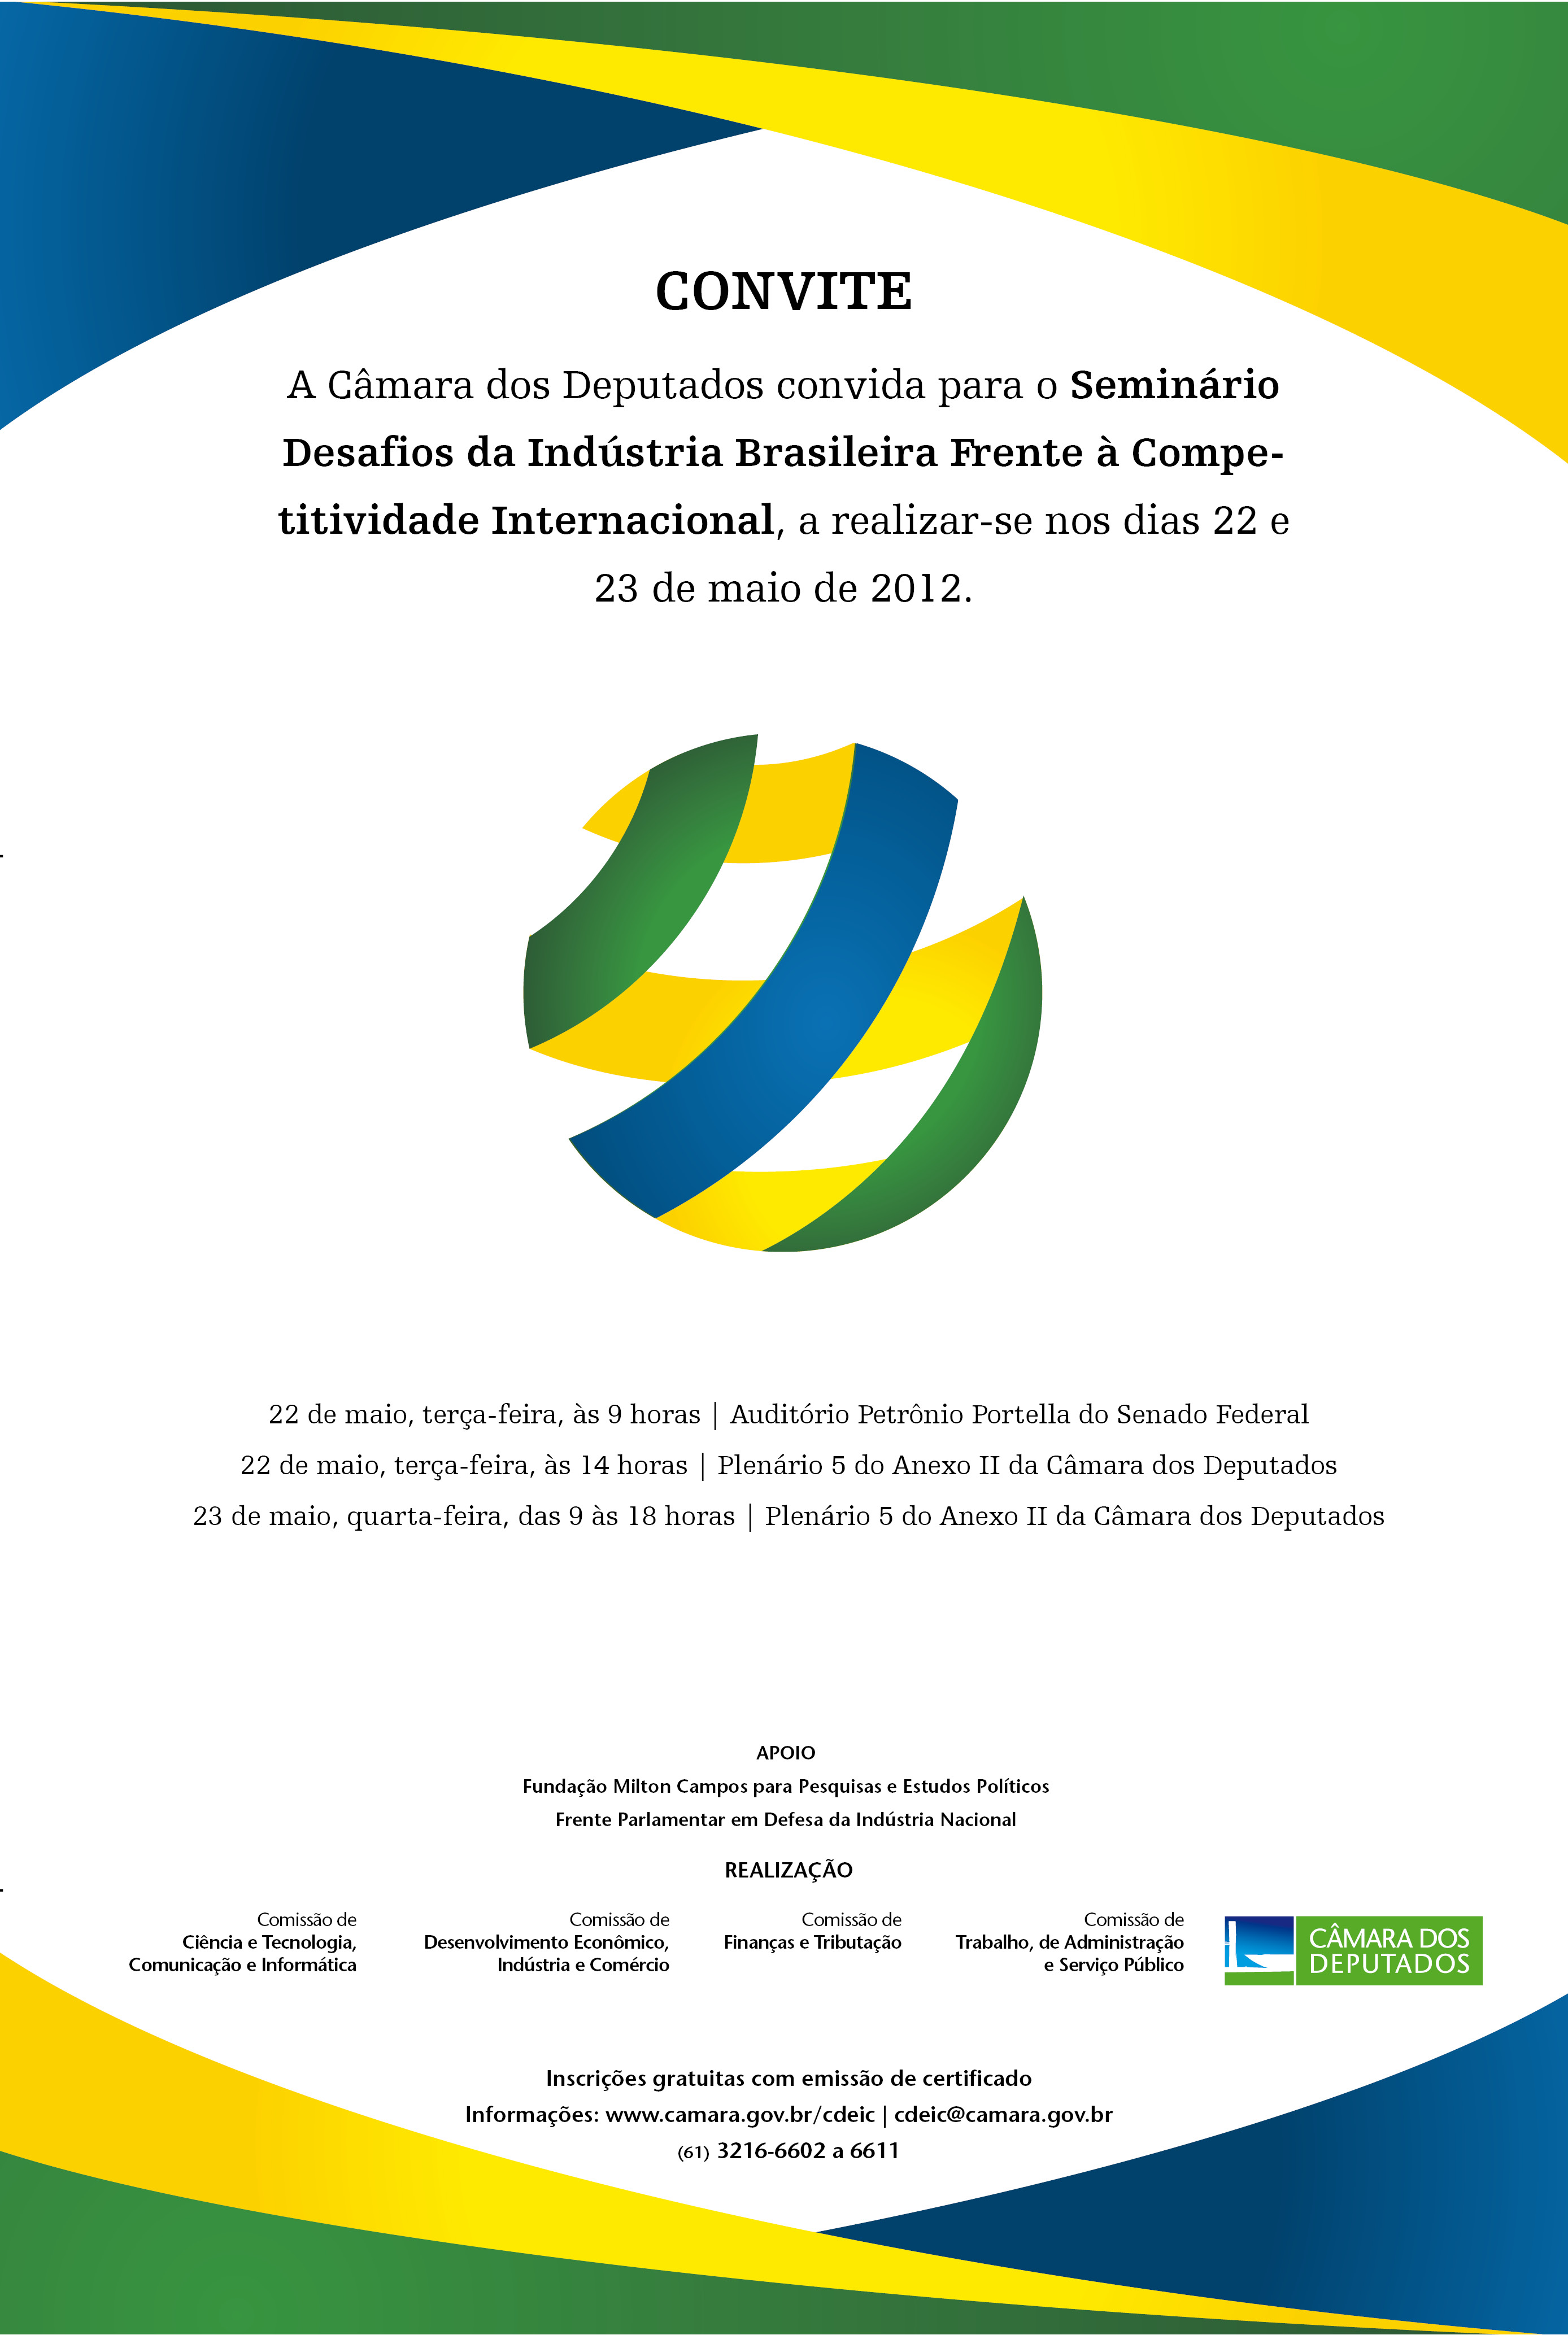 Seminário "Desafios da Indústria Brasileira frente à competitividade internacional" teve a participação da CFT.